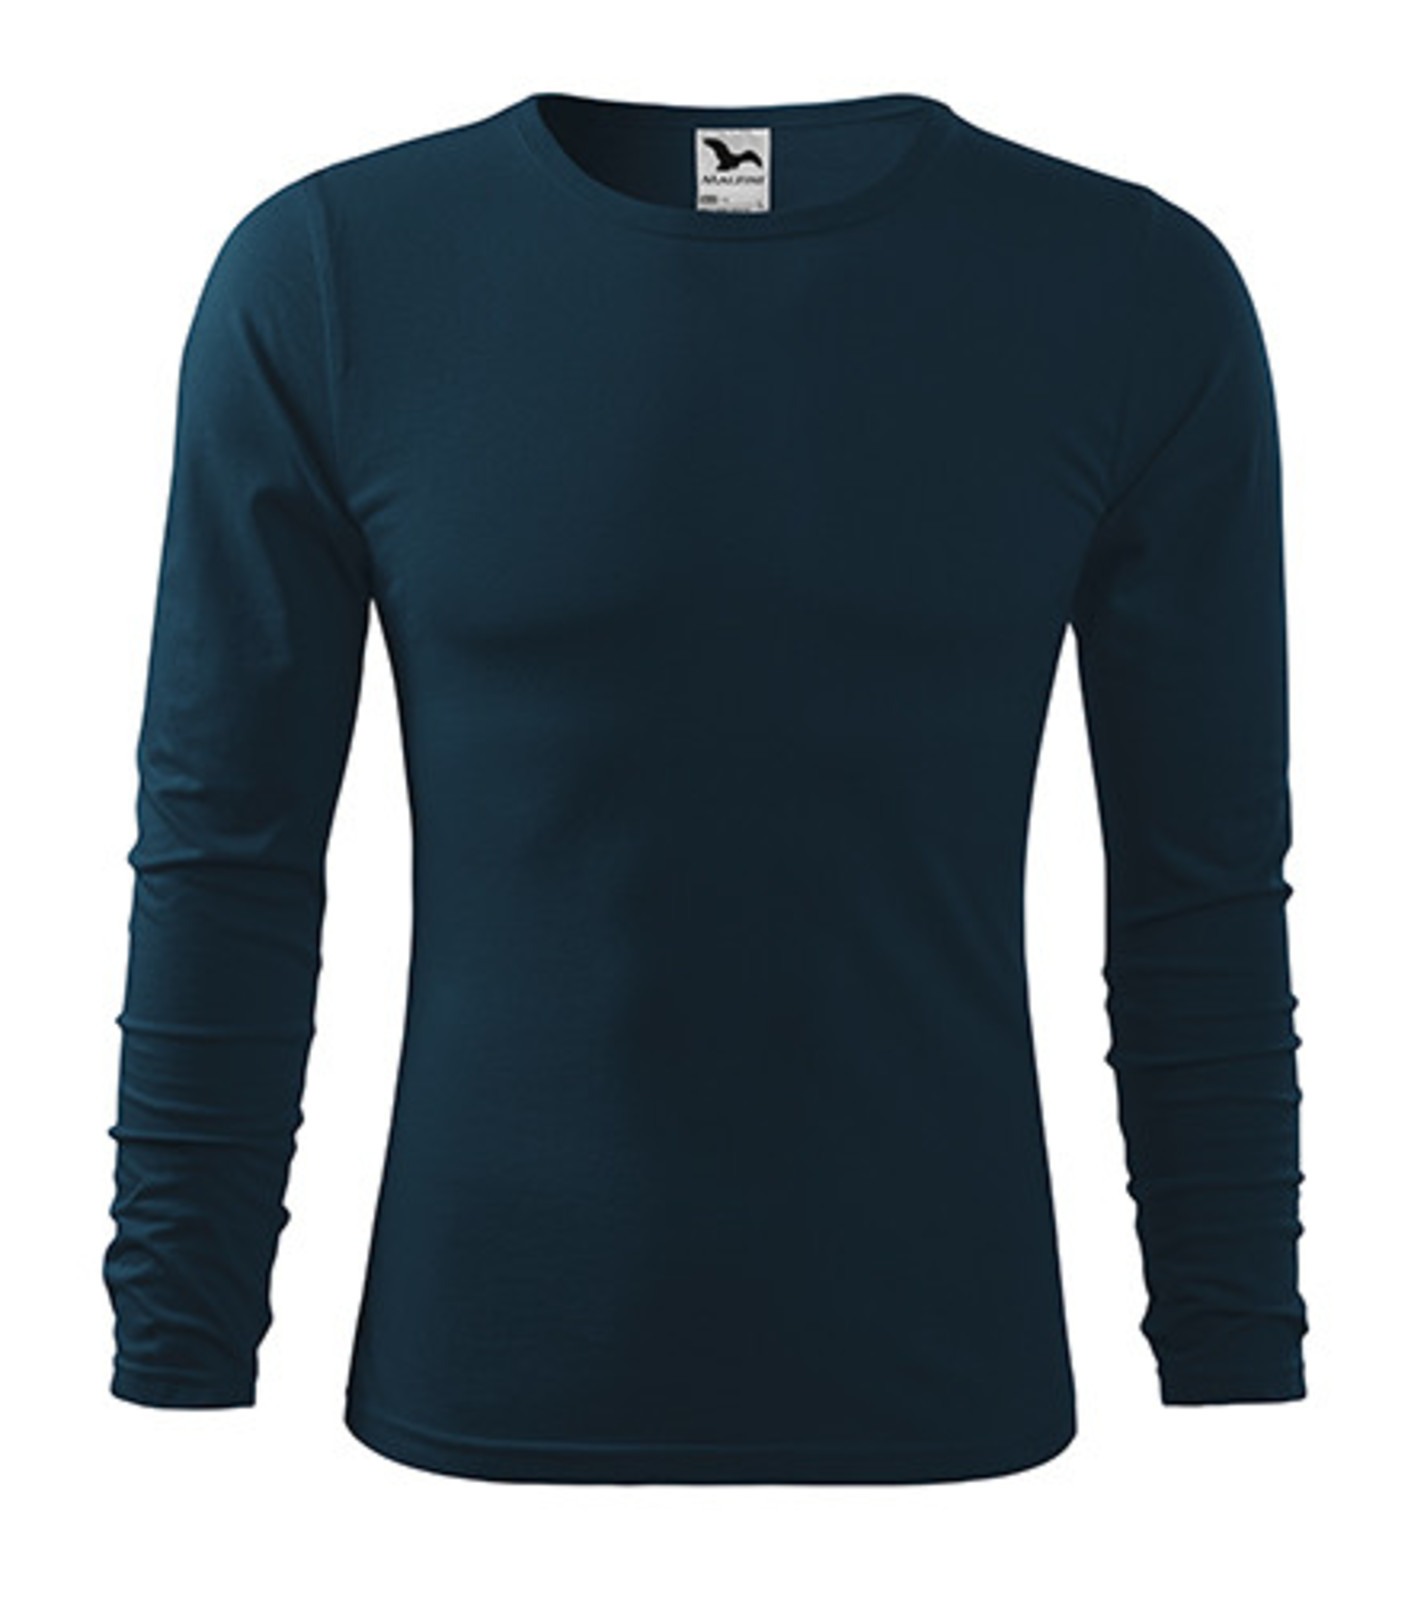 Pánske bavlnené tričko s dlhým rukávom Malfini Fit-T 119 - veľkosť: L, farba: tmavo modrá